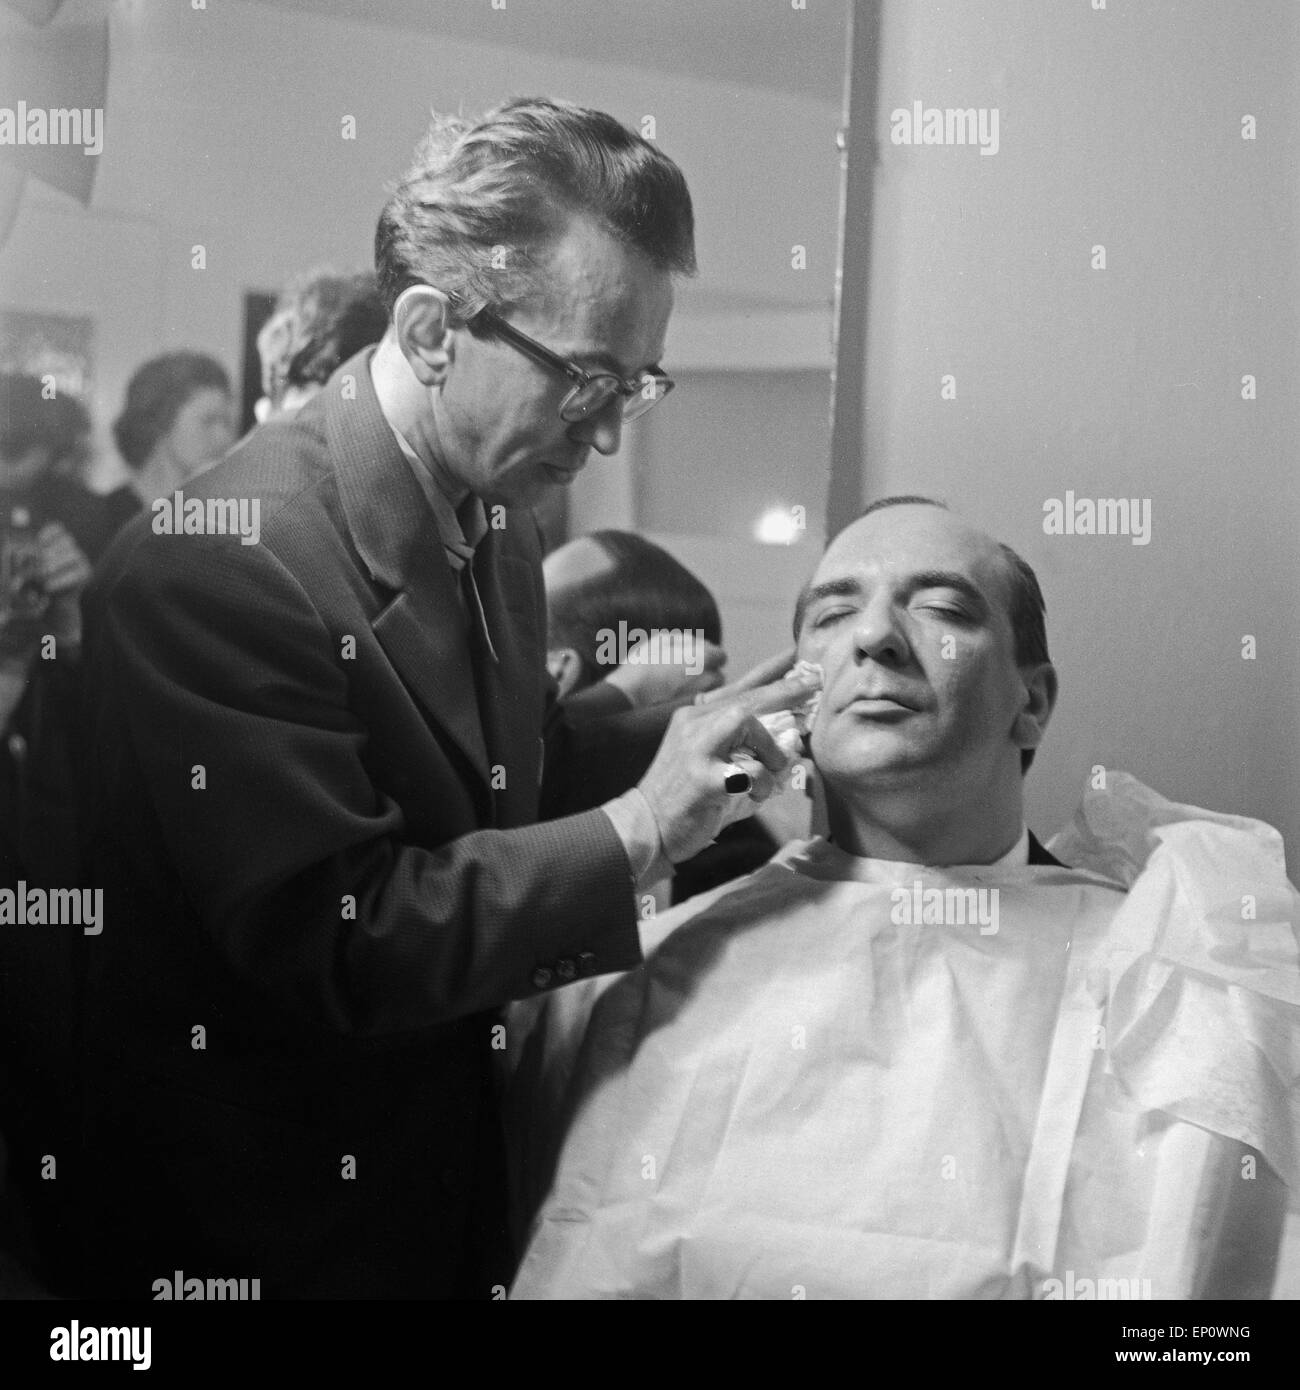 Einer der Moderatoren der Fernsehlotterie visualizza 'Die grosse possibilità' wird vom Maskenbilnder abgepudert, Deutschland 1950er Jahre. Foto Stock